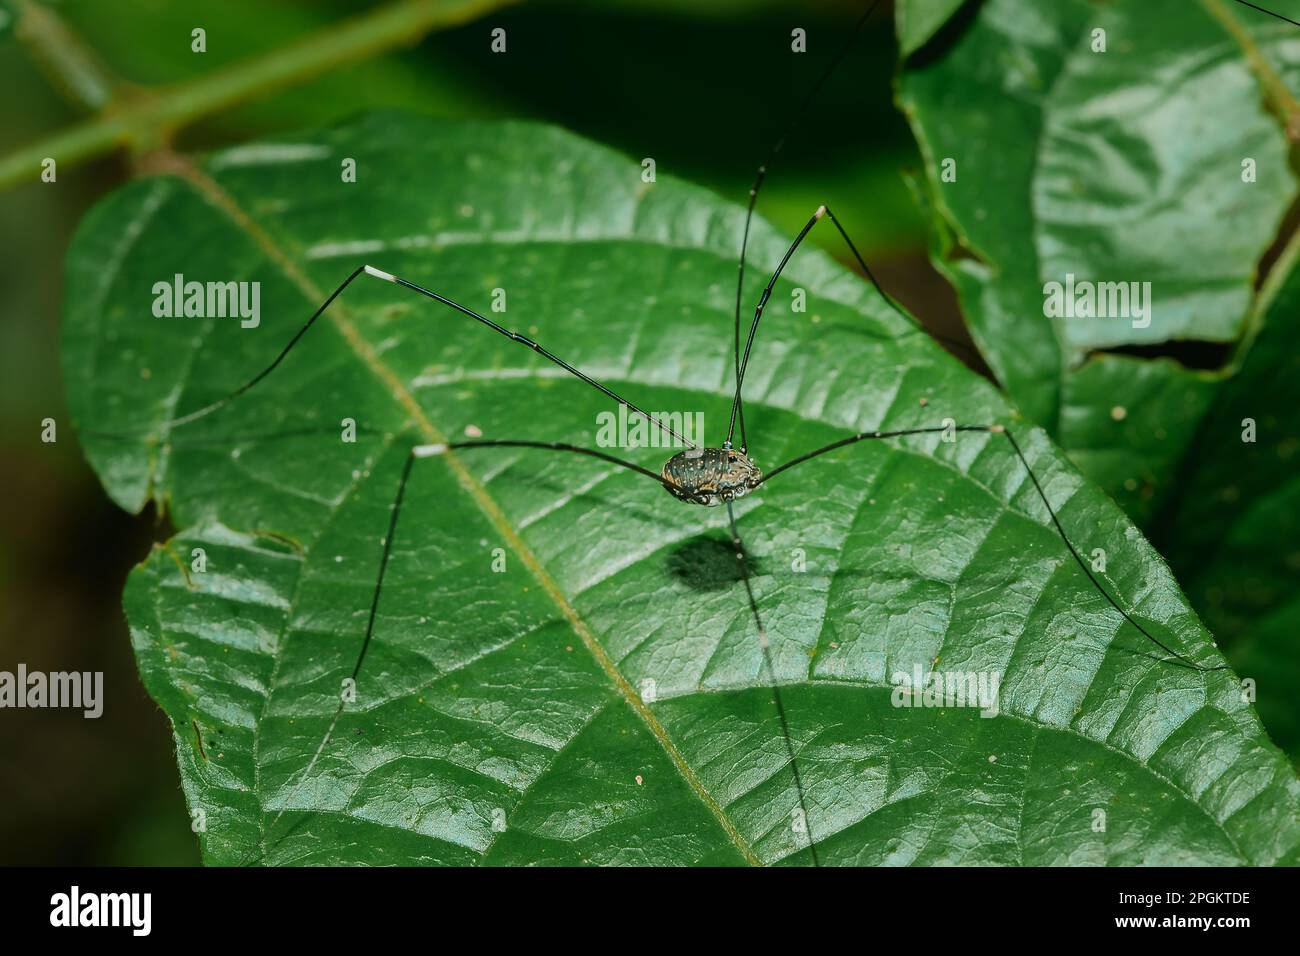 Die schwarze langbeinige Spinne (Kosynoschka) lebt auf den Blättern der Natur. Über die ganze Welt verteilt gibt es mehr als 6 Arten. Stockfoto